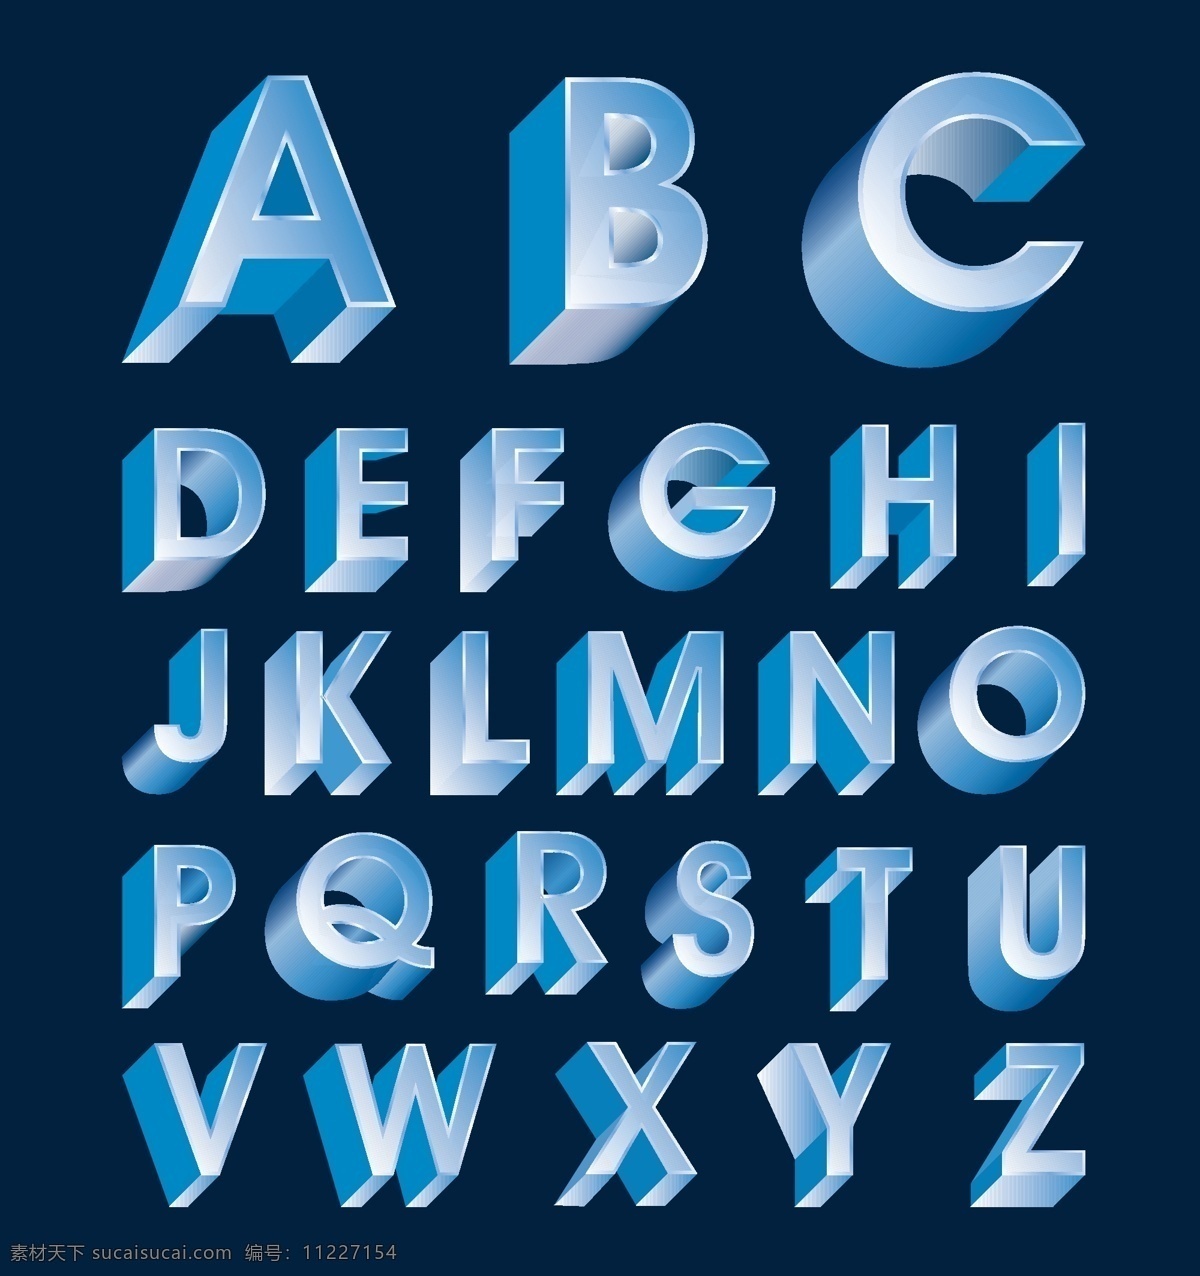 矢量 三维 字母 系列 英国 字体 辉煌的 不同 字母表 中 立体声 矢量图 艺术字